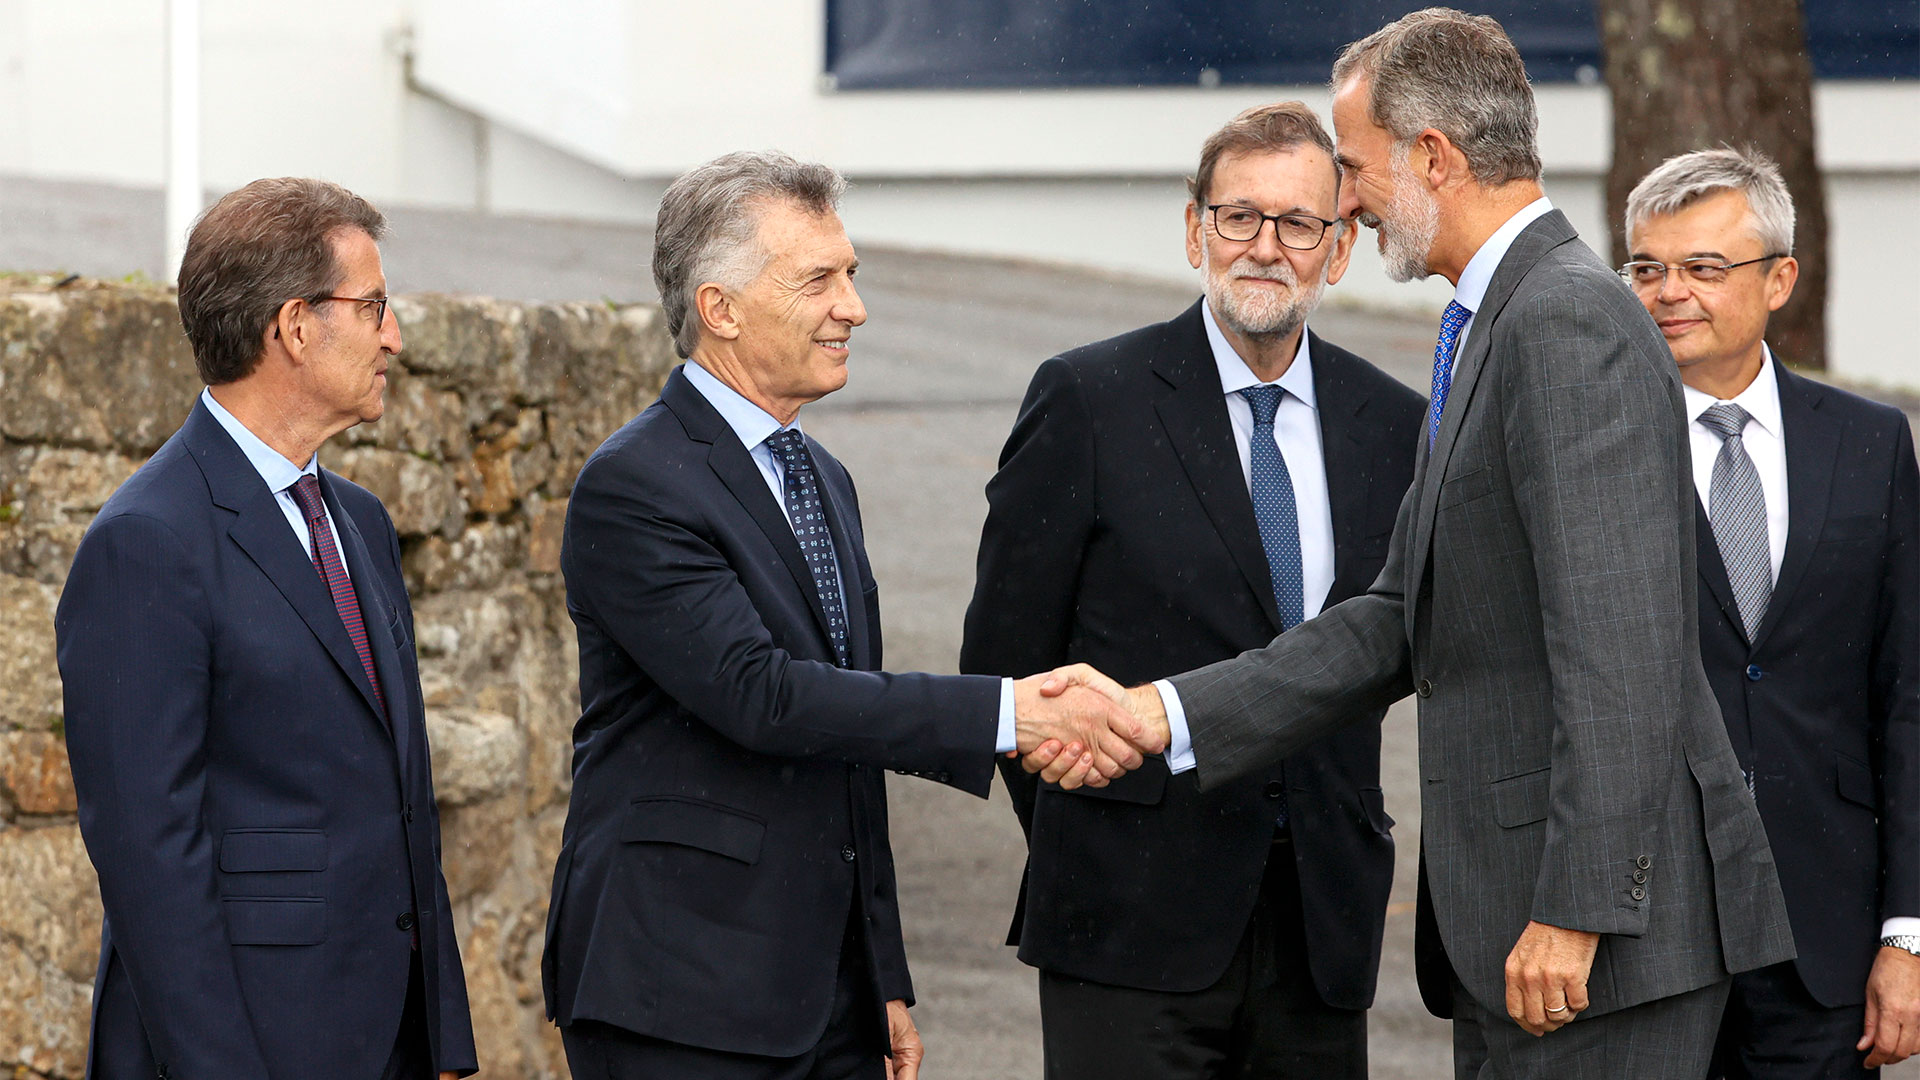 El Rey Felipe VI saluda a Mauricio Macri (EFE/Lavandeira jr)
